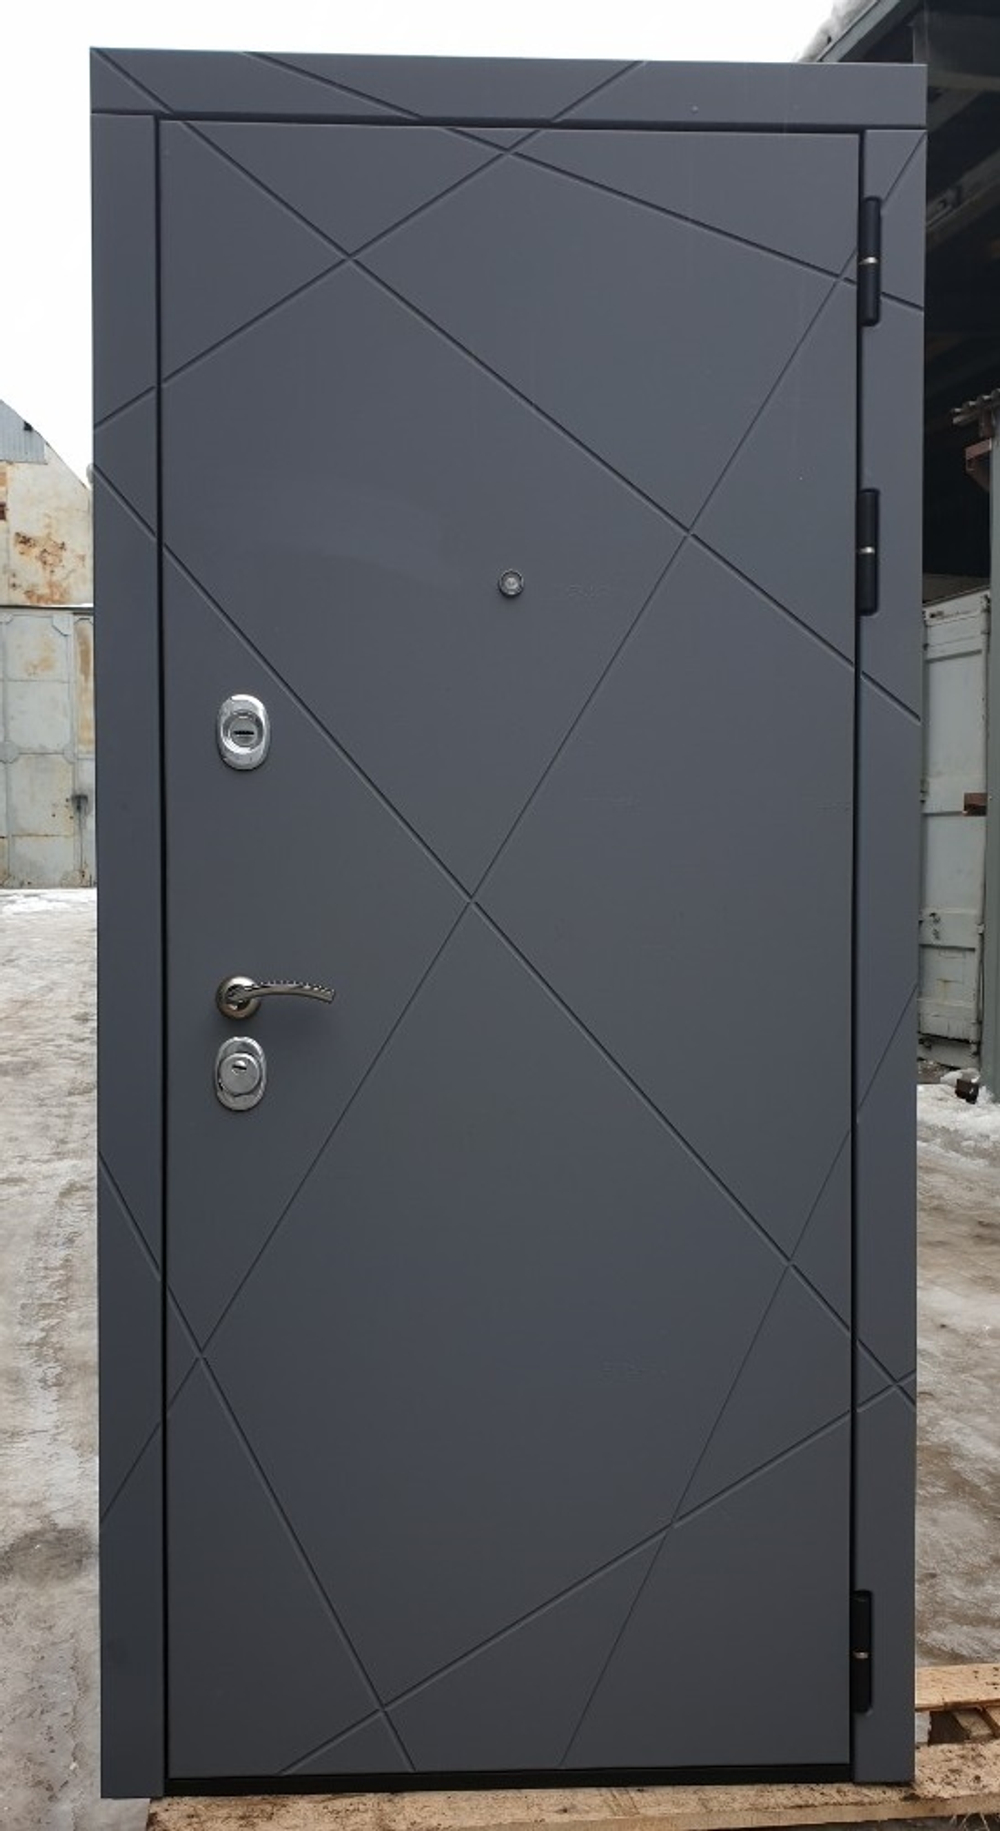 Входная металлическая дверь с зеркалом RеX 13 Титан 291 / Пастораль Силк сноу ( белый матовый, без текстуры)